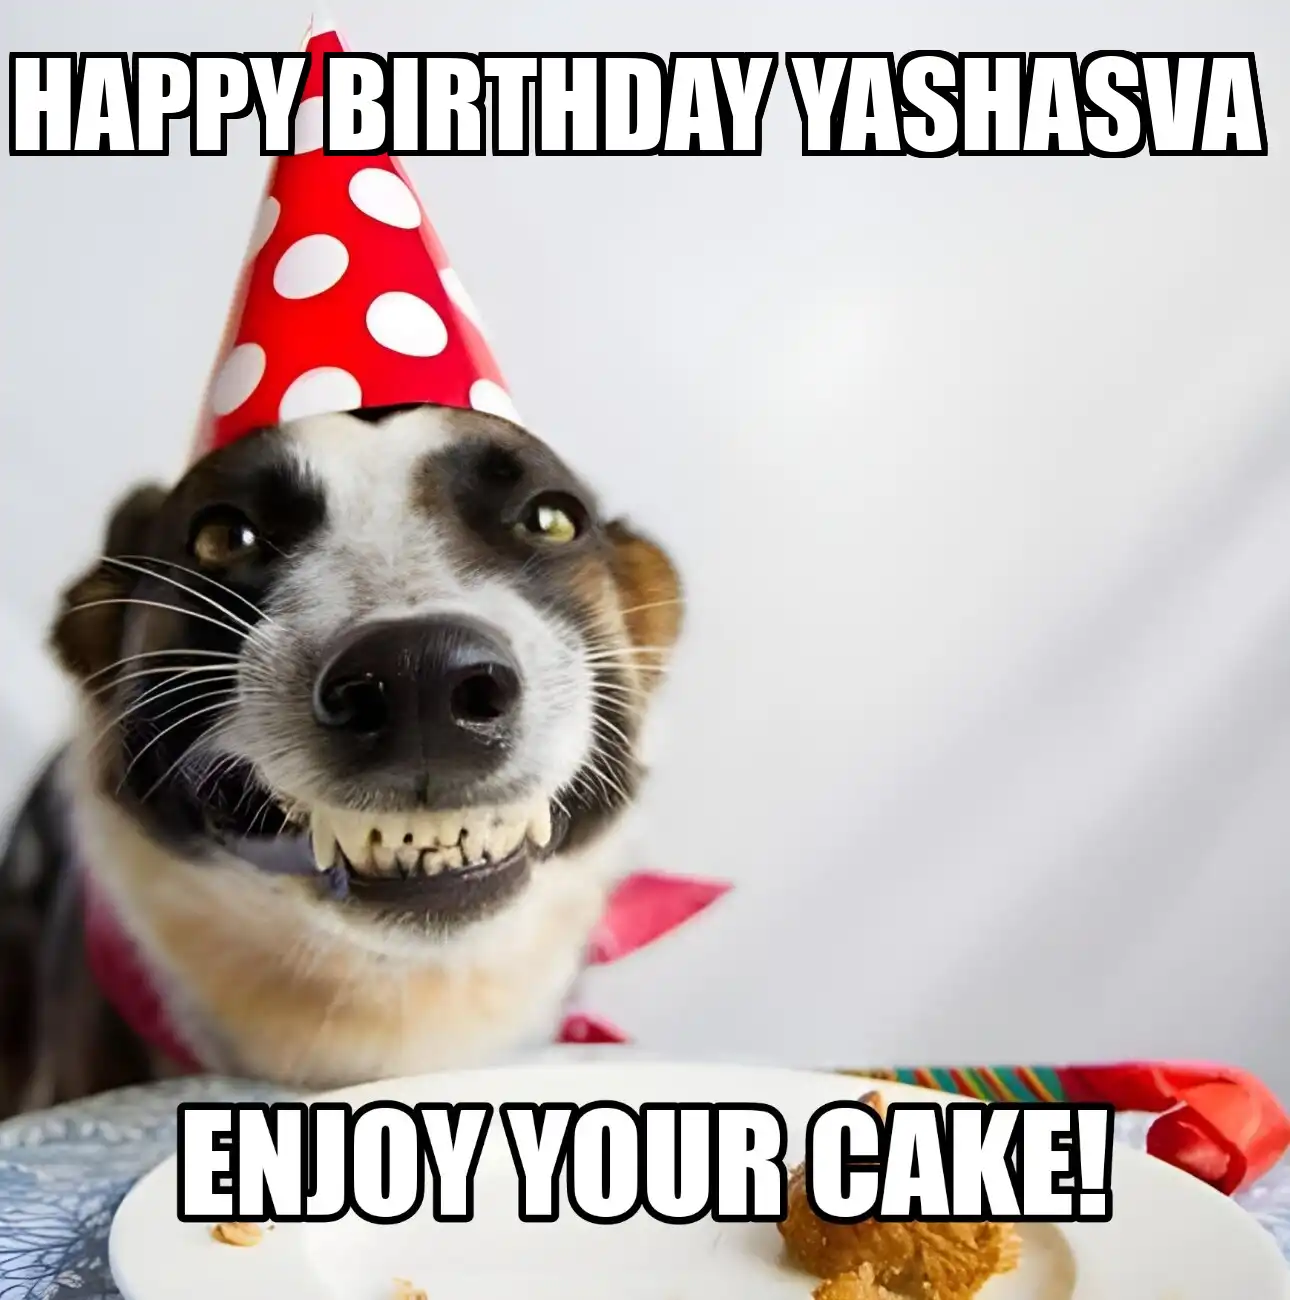 Happy Birthday Yashasva Enjoy Your Cake Dog Meme